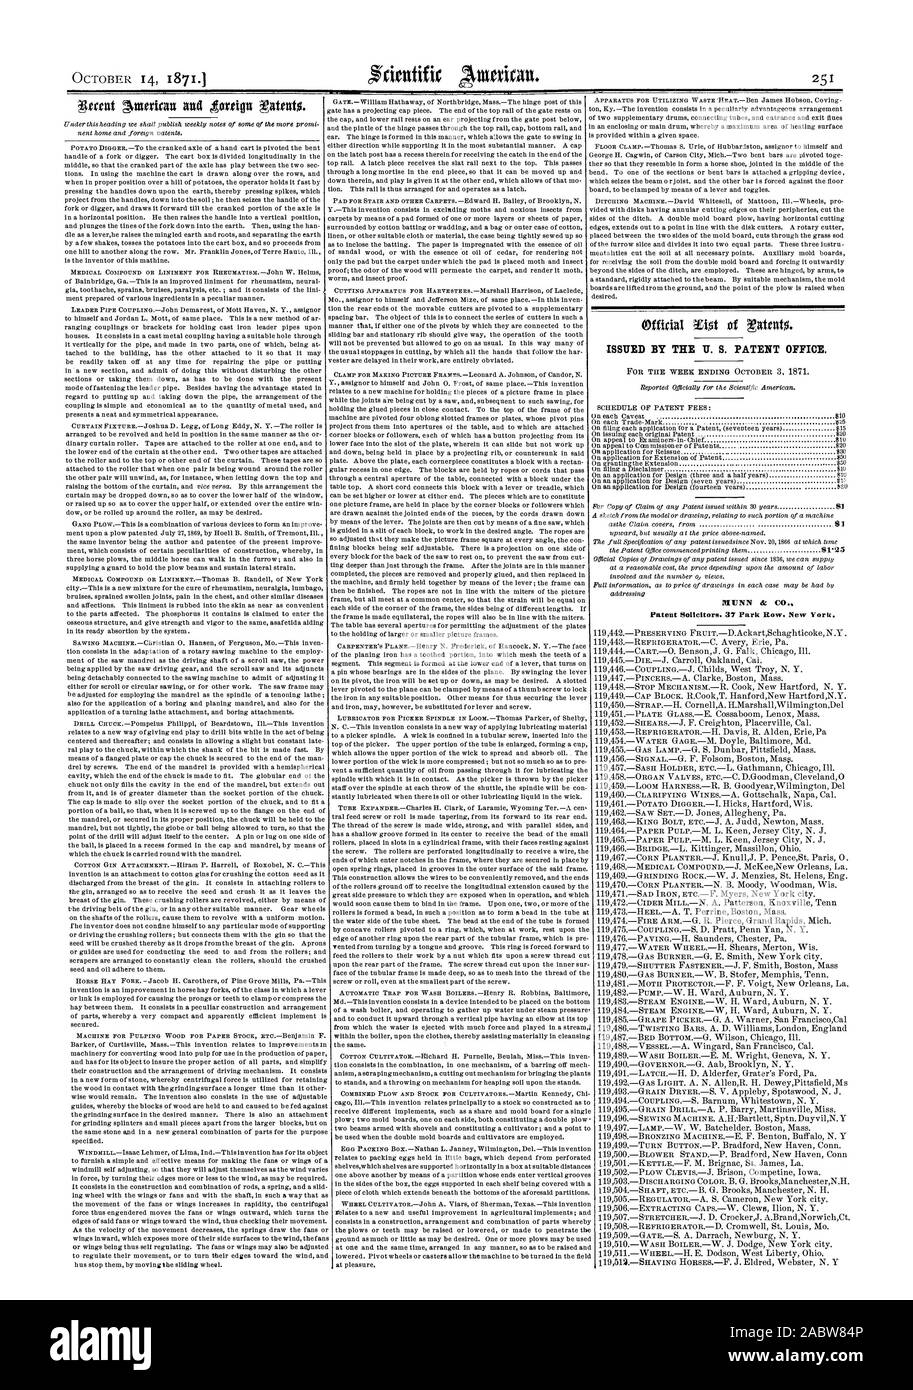 Die US PATENTAMT HERAUSGEGEBEN., Scientific American, 1871-10-14 Stockfoto